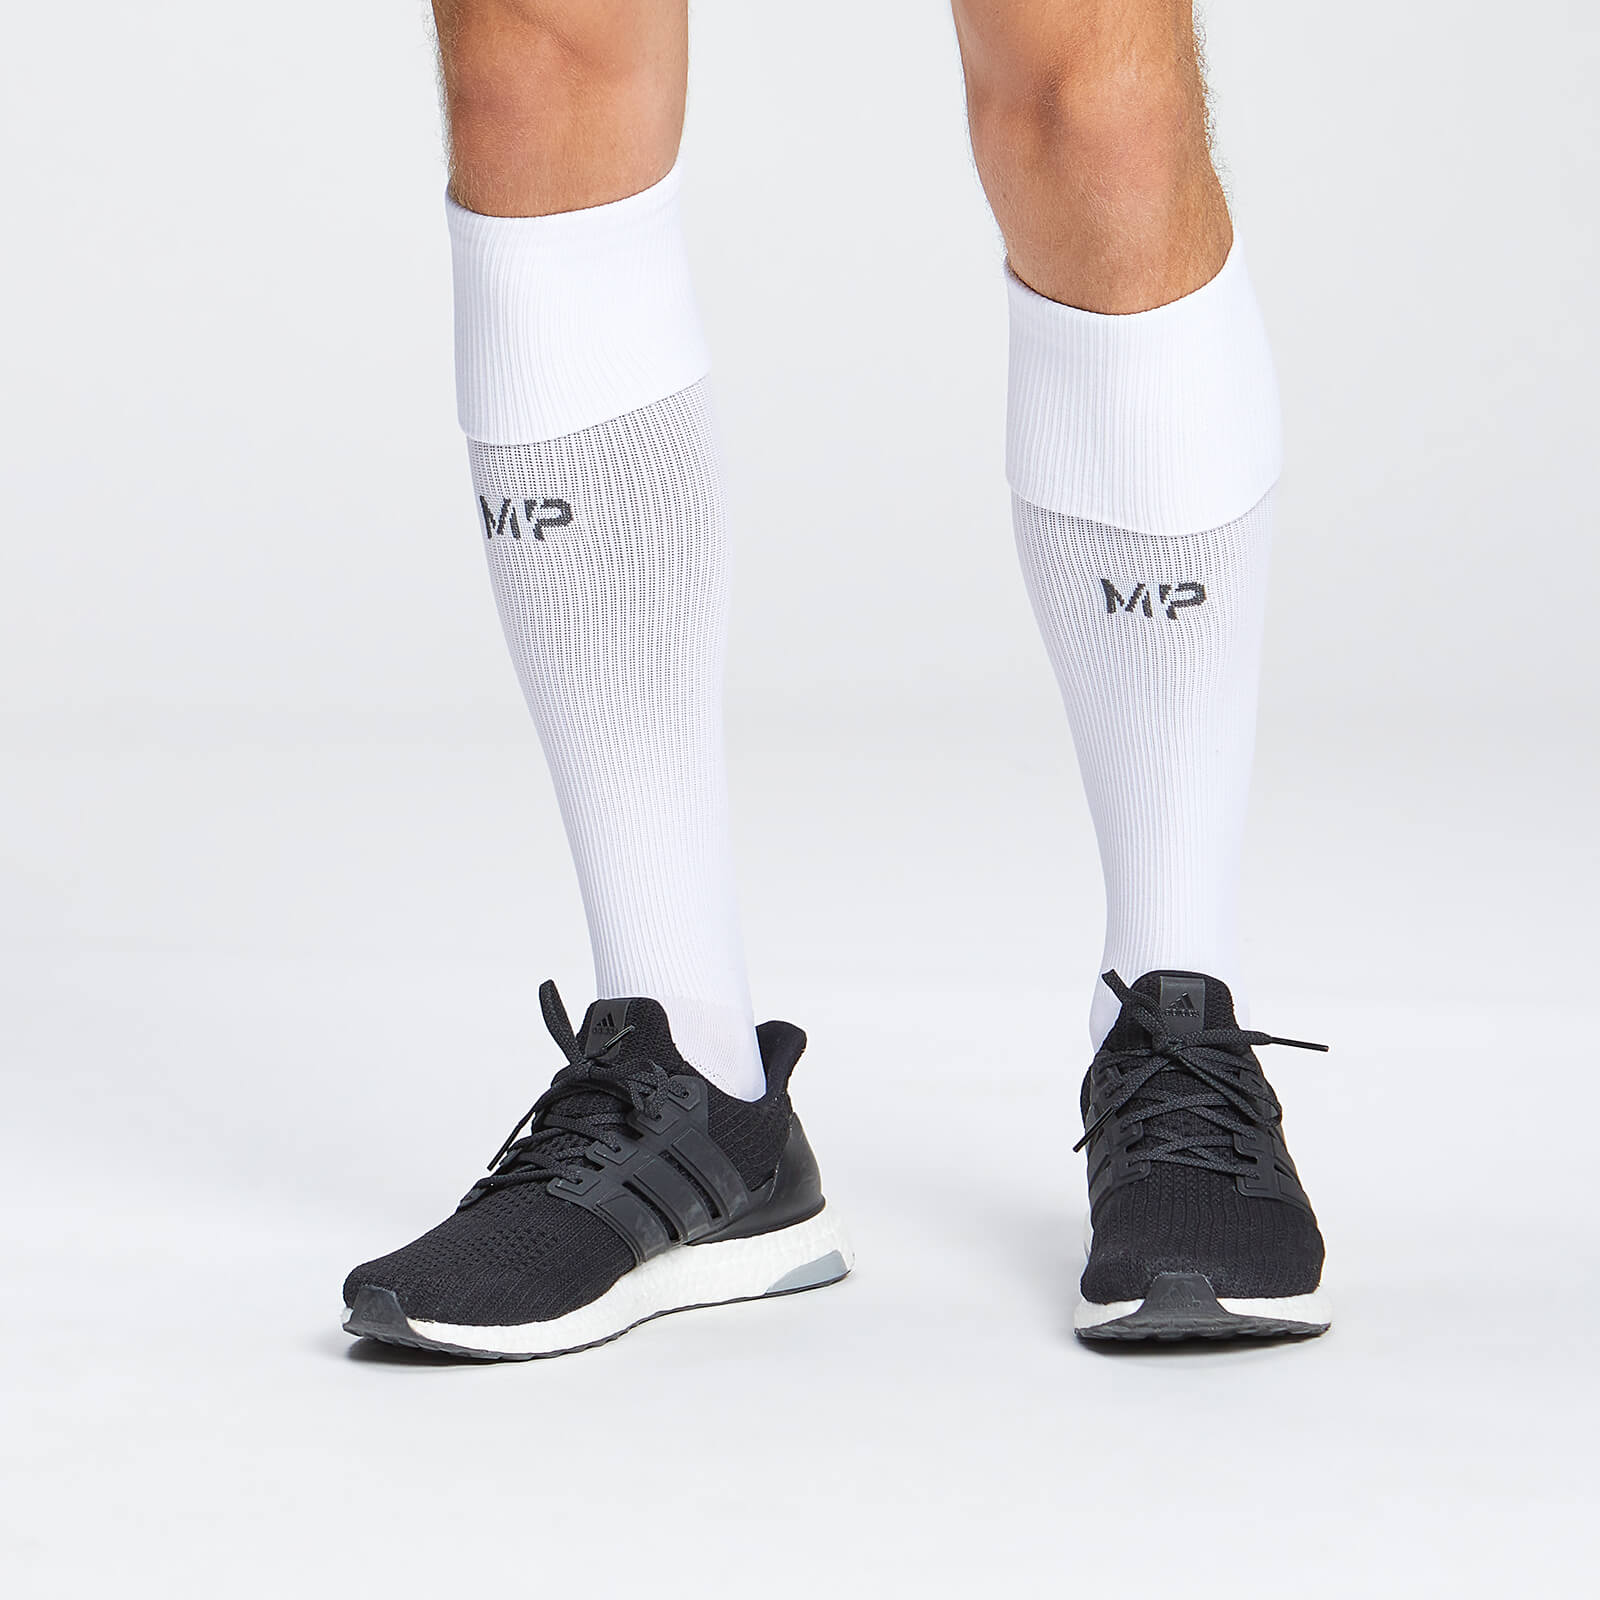 Chaussettes de football pleine longueur MP – Blanc - UK 9-12